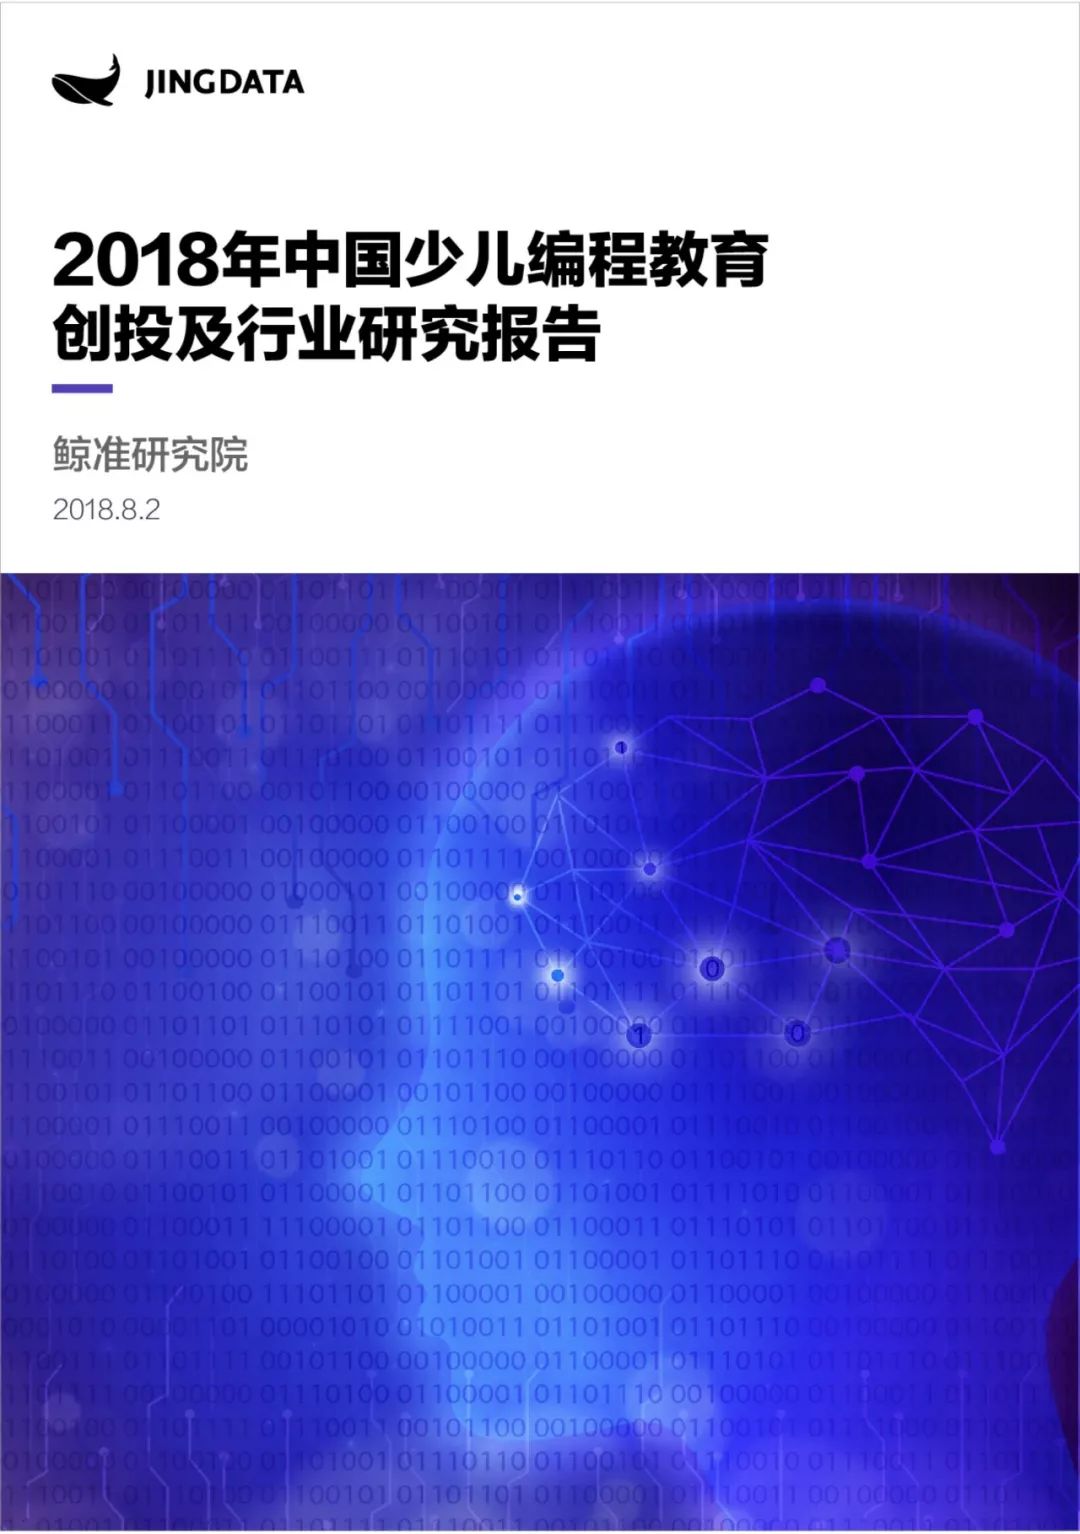 2018年中国少儿编程教育创投及行业研究报告